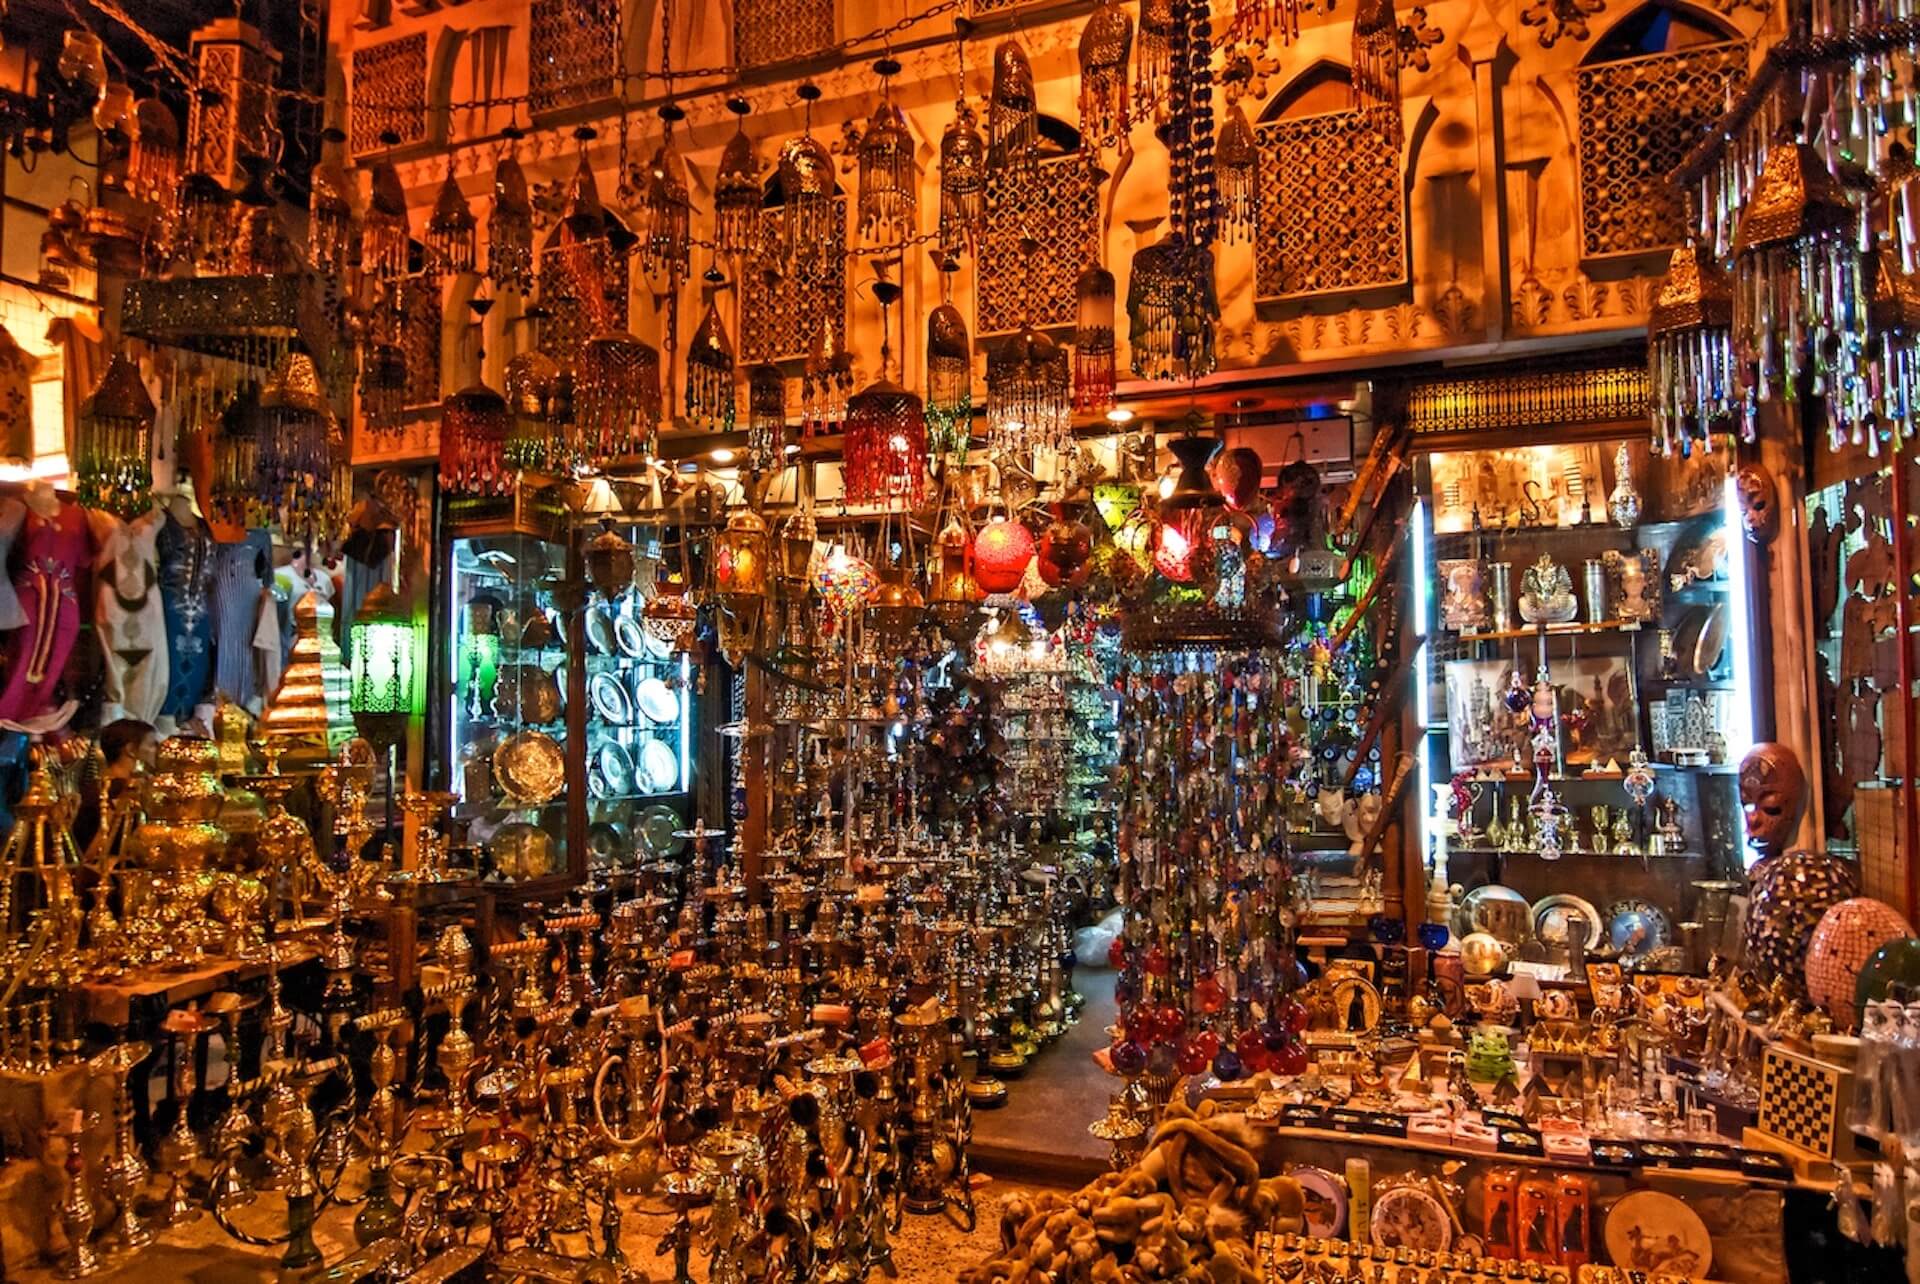 Khan-El-Khalili-Bazaar